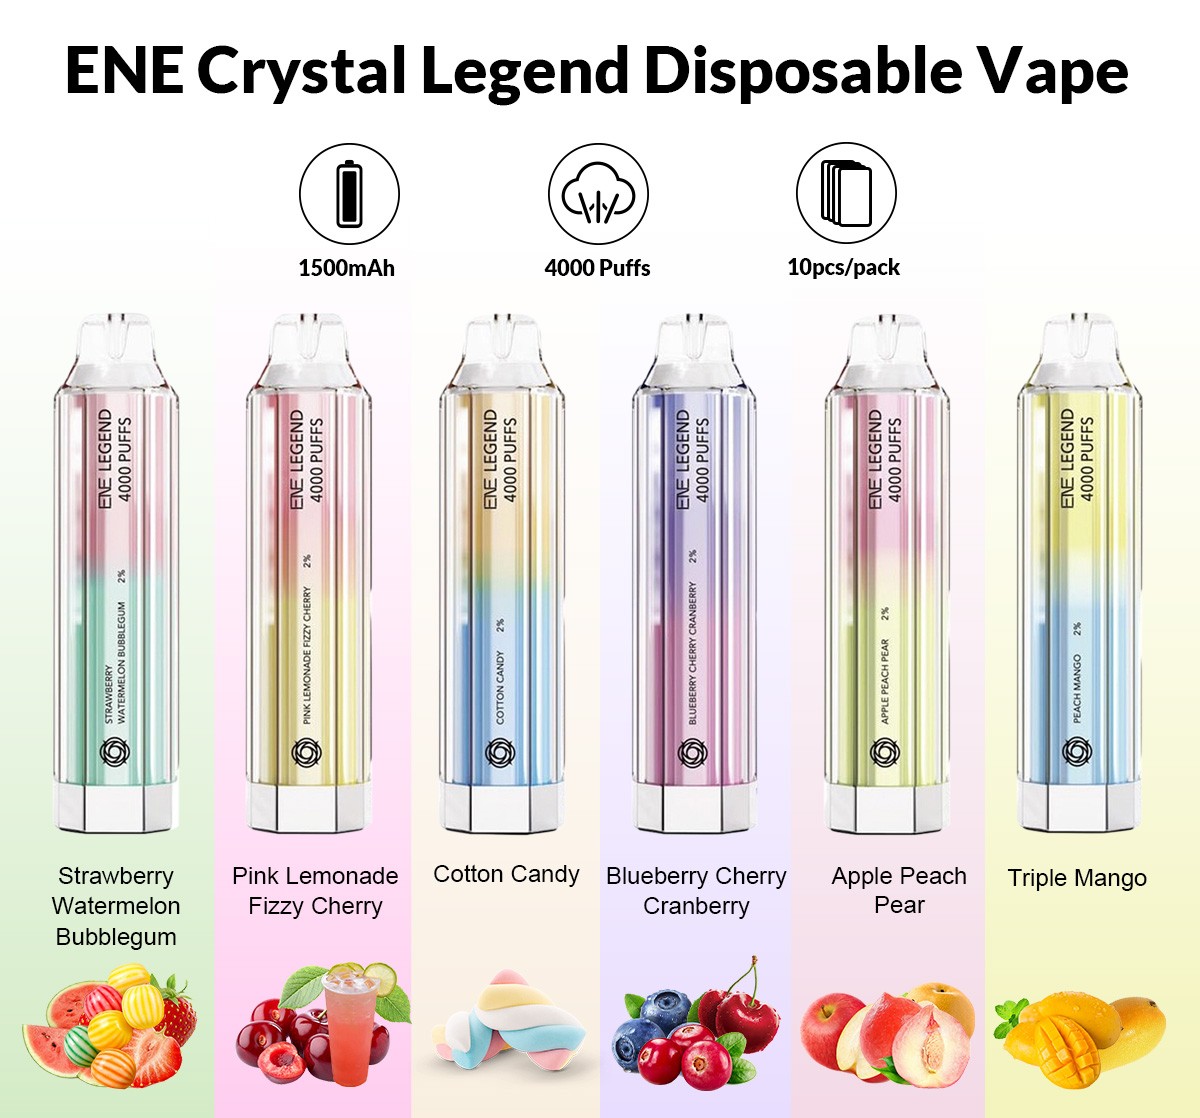 ENE Crystal Legend Disposable